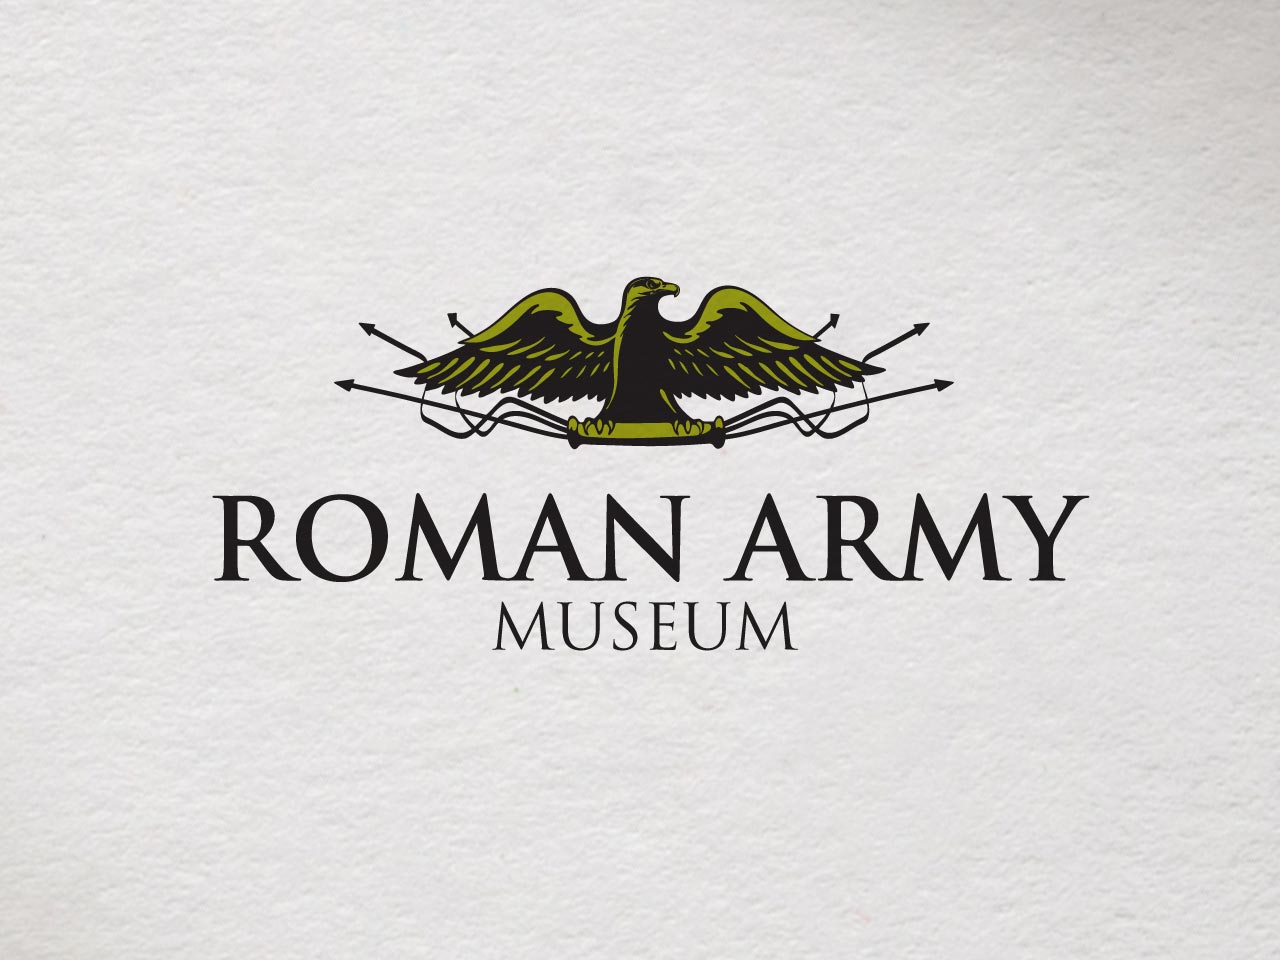 Roman Army Museum logo